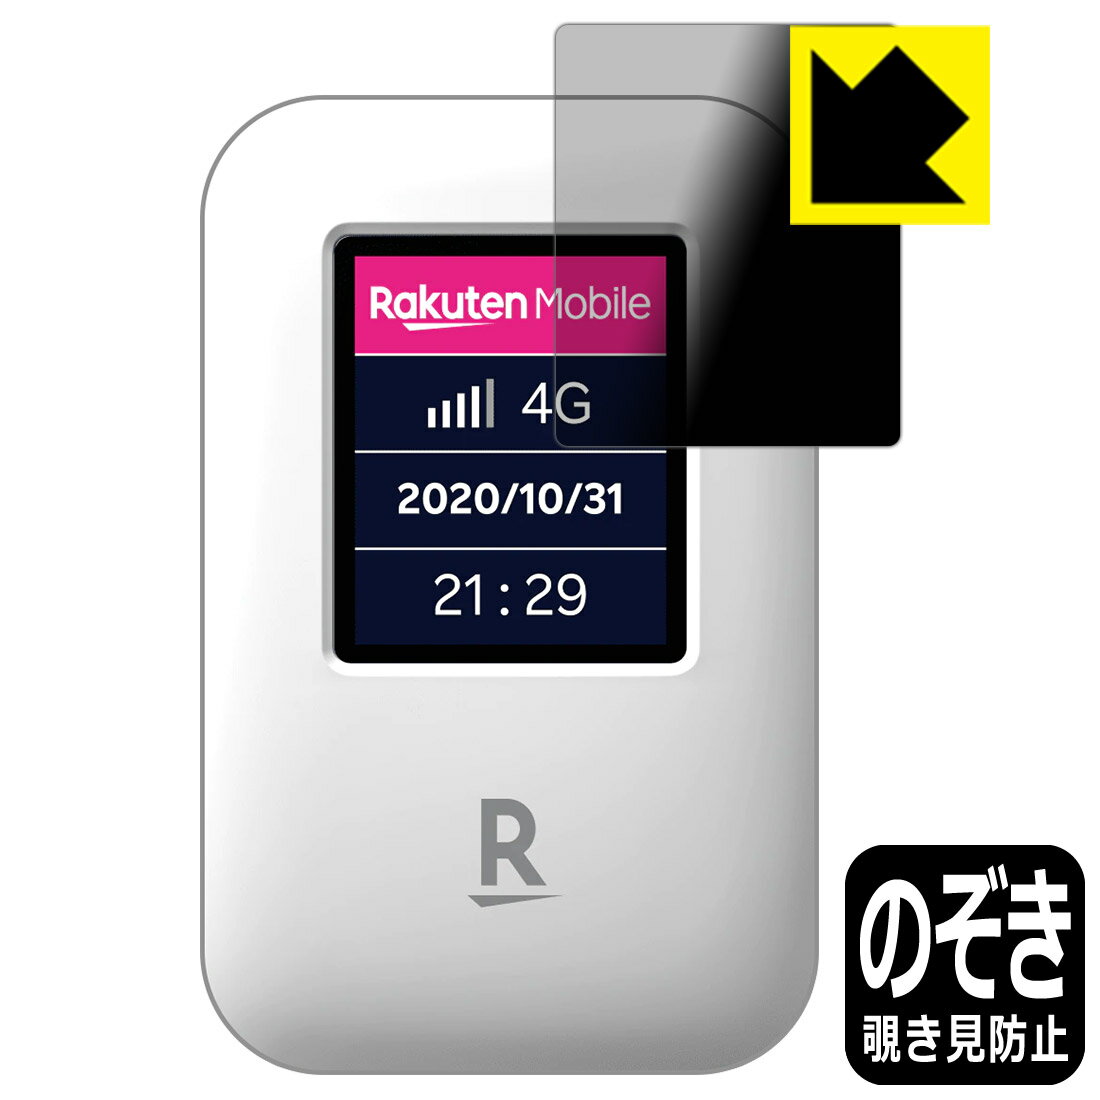 ●対応機種 : 楽天モバイル Rakuten WiFi Pocket●内容量 : 1枚●特殊ブラインド加工で360°全方向のぞき見防止！まわりの視線からプライバシーを保護します。●高品質の素材を使用。日本国内の自社工場で製造し出荷しています。【ポスト投函送料無料】商品は【ポスト投函発送 (追跡可能メール便)】で発送します。お急ぎ、配達日時を指定されたい方は以下のクーポンを同時購入ください。【お急ぎ便クーポン】　プラス110円(税込)で速達扱いでの発送。お届けはポストへの投函となります。【配達日時指定クーポン】　プラス550円(税込)で配達日時を指定し、宅配便で発送させていただきます。【お急ぎ便クーポン】はこちらをクリック【配達日時指定クーポン】はこちらをクリック 　 正面からは画面がはっきり見えますが、上下左右30°の外側からでは画面が暗くなって見えません。 電車の中など、周りの視線が気になるシーンで、メッセージやメールのやり取りを行うことができます。 また、業務などで個人情報を扱う場合など、プライバシーに配慮する必要がある場合はこのフィルムがおすすめです。 ※仕様上、一般的な保護シートより光線透過率が下がります(約50%)。ご了承ください。 表面に微細な凹凸を作ることにより、外光を乱反射させギラツキを抑える「アンチグレア加工」がされております。 屋外での太陽光の映り込み、屋内でも蛍光灯などの映り込みが気になるシーンが多い方におすすめです。 また、指紋がついた場合でも目立ちにくいという特長があります。 指滑りはさらさらな使用感でストレスのない操作・入力が可能です。 ハードコート加工がされており、キズや擦れに強くなっています。簡単にキズがつかず長くご利用いただけます。 反射防止のアンチグレア加工で指紋が目立ちにくい上、表面は防汚コーティングがされており、皮脂や汚れがつきにくく、また、落ちやすくなっています。 接着面は気泡の入りにくい特殊な自己吸着タイプです。素材に柔軟性があり、貼り付け作業も簡単にできます。また、はがすときにガラス製フィルムのように割れてしまうことはありません。 貼り直しが何度でもできるので、正しい位置へ貼り付けられるまでやり直すことができます。 高品質の素材を使用。日本国内の弊社工場で加工している Made in Japan です。 使用上の注意 ●本製品は機器の画面をキズなどから保護するフィルムです。他の目的にはご使用にならないでください。 ●本製品は液晶保護および機器本体を完全に保護することを保証するものではありません。機器の破損、損傷、故障、その他損害につきましては一切の責任を負いかねます。 ●製品の性質上、画面操作の反応が変化したり、表示等が変化して見える場合がございます。 ●貼り付け作業時の失敗(位置ズレ、汚れ、ゆがみ、折れ、気泡など)および取り外し作業時の破損、損傷などについては、一切の責任を負いかねます。 ●水に濡れた状態でのご使用は吸着力の低下などにより、保護フィルムがはがれてしまう場合がございます。防水対応の機器でご使用の場合はご注意ください。 ●アルコール類やその他薬剤を本製品に付着させないでください。表面のコーティングや吸着面が変質するおそれがあります。 ●品質向上のため、仕様などを予告なく変更する場合がございますので、予めご了承ください。